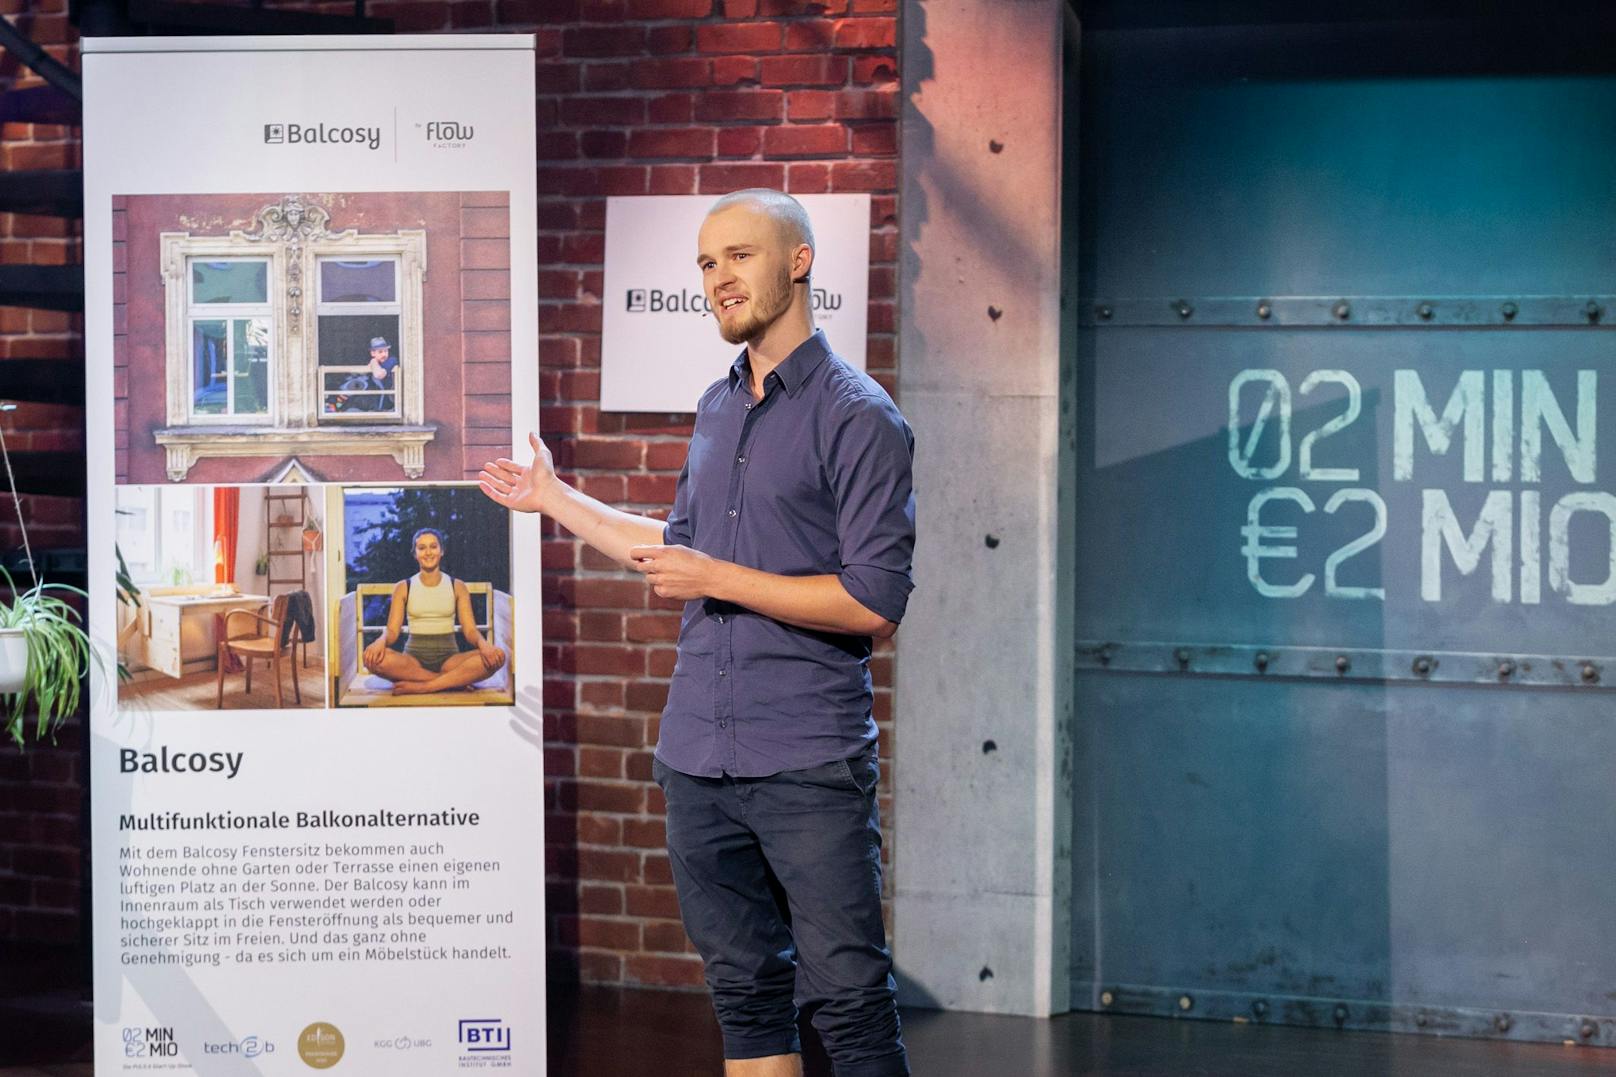 Der Balcosy-Gründer und Erfinder Florian Holzmayer präsentierte seine Ideen bei der Puls4-Show "2 Minuten 2 Millionen". Es gab zwar viel Lob, aber keine Finanzierung.